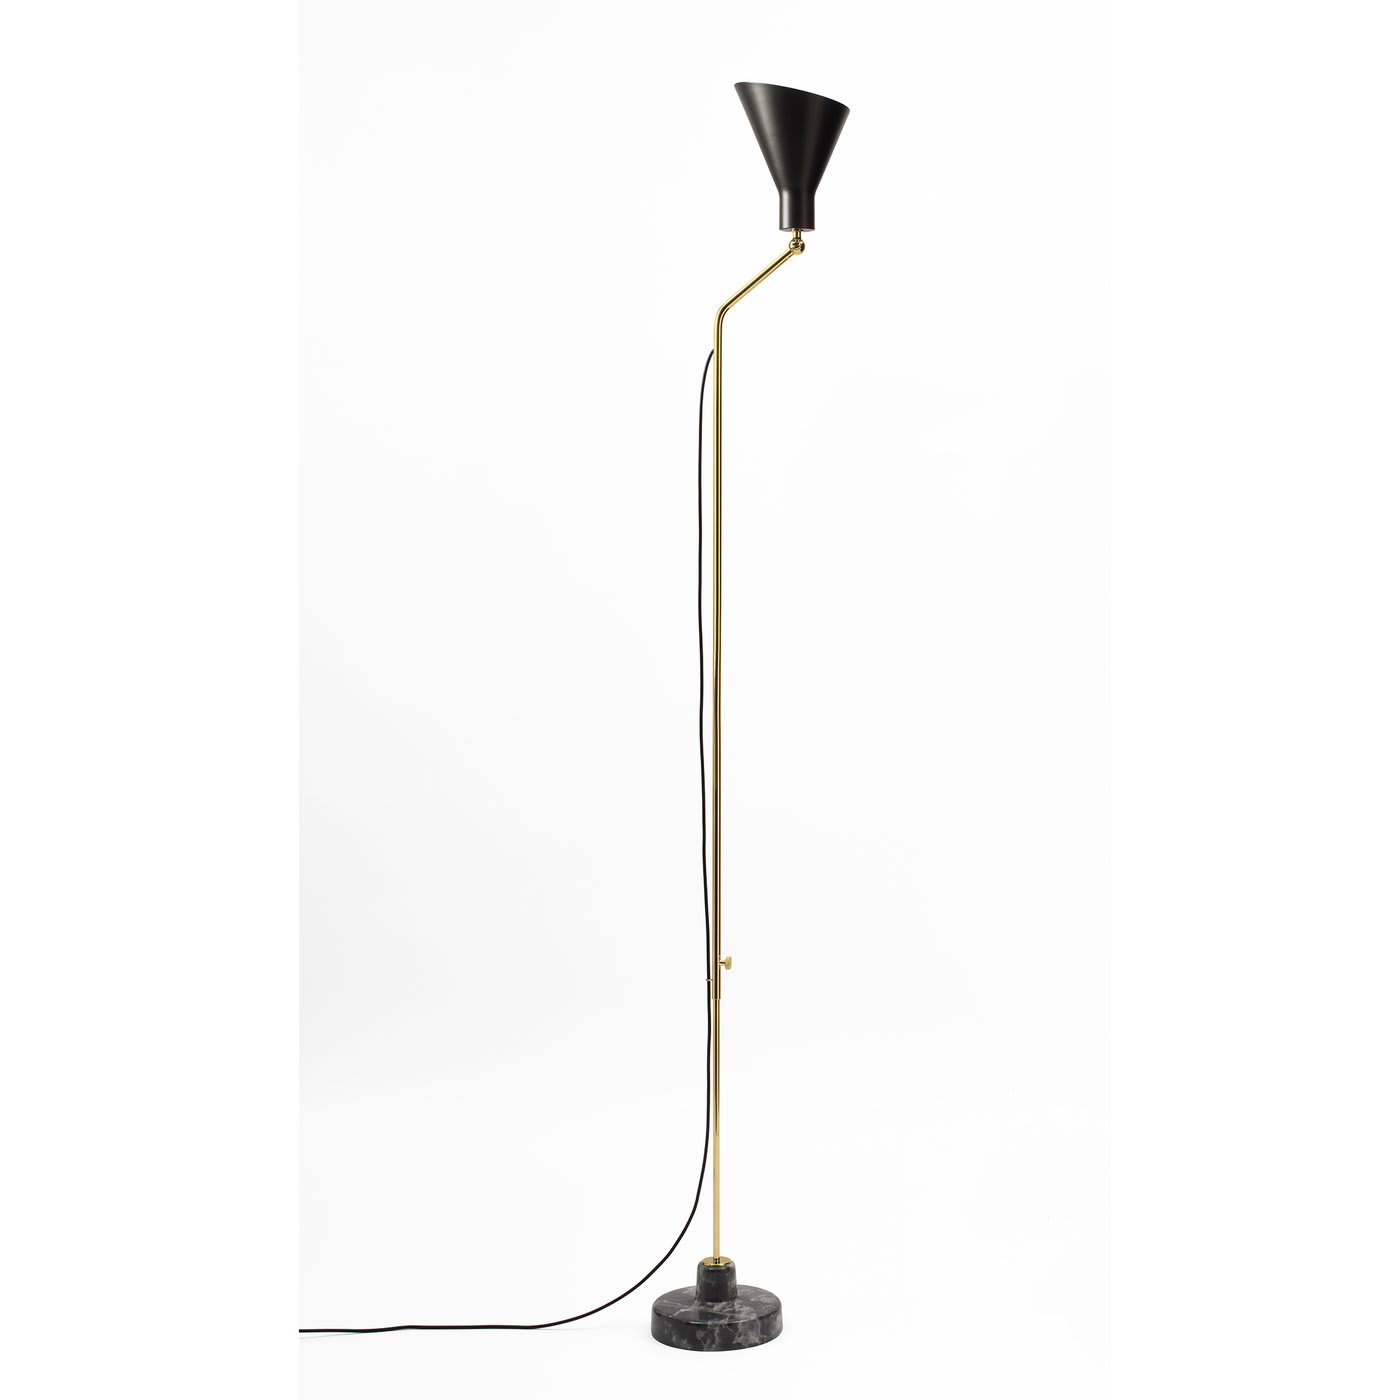 Alzabile Brass Gray and Black Floor Lamp by Ignazio Gardella - Tato